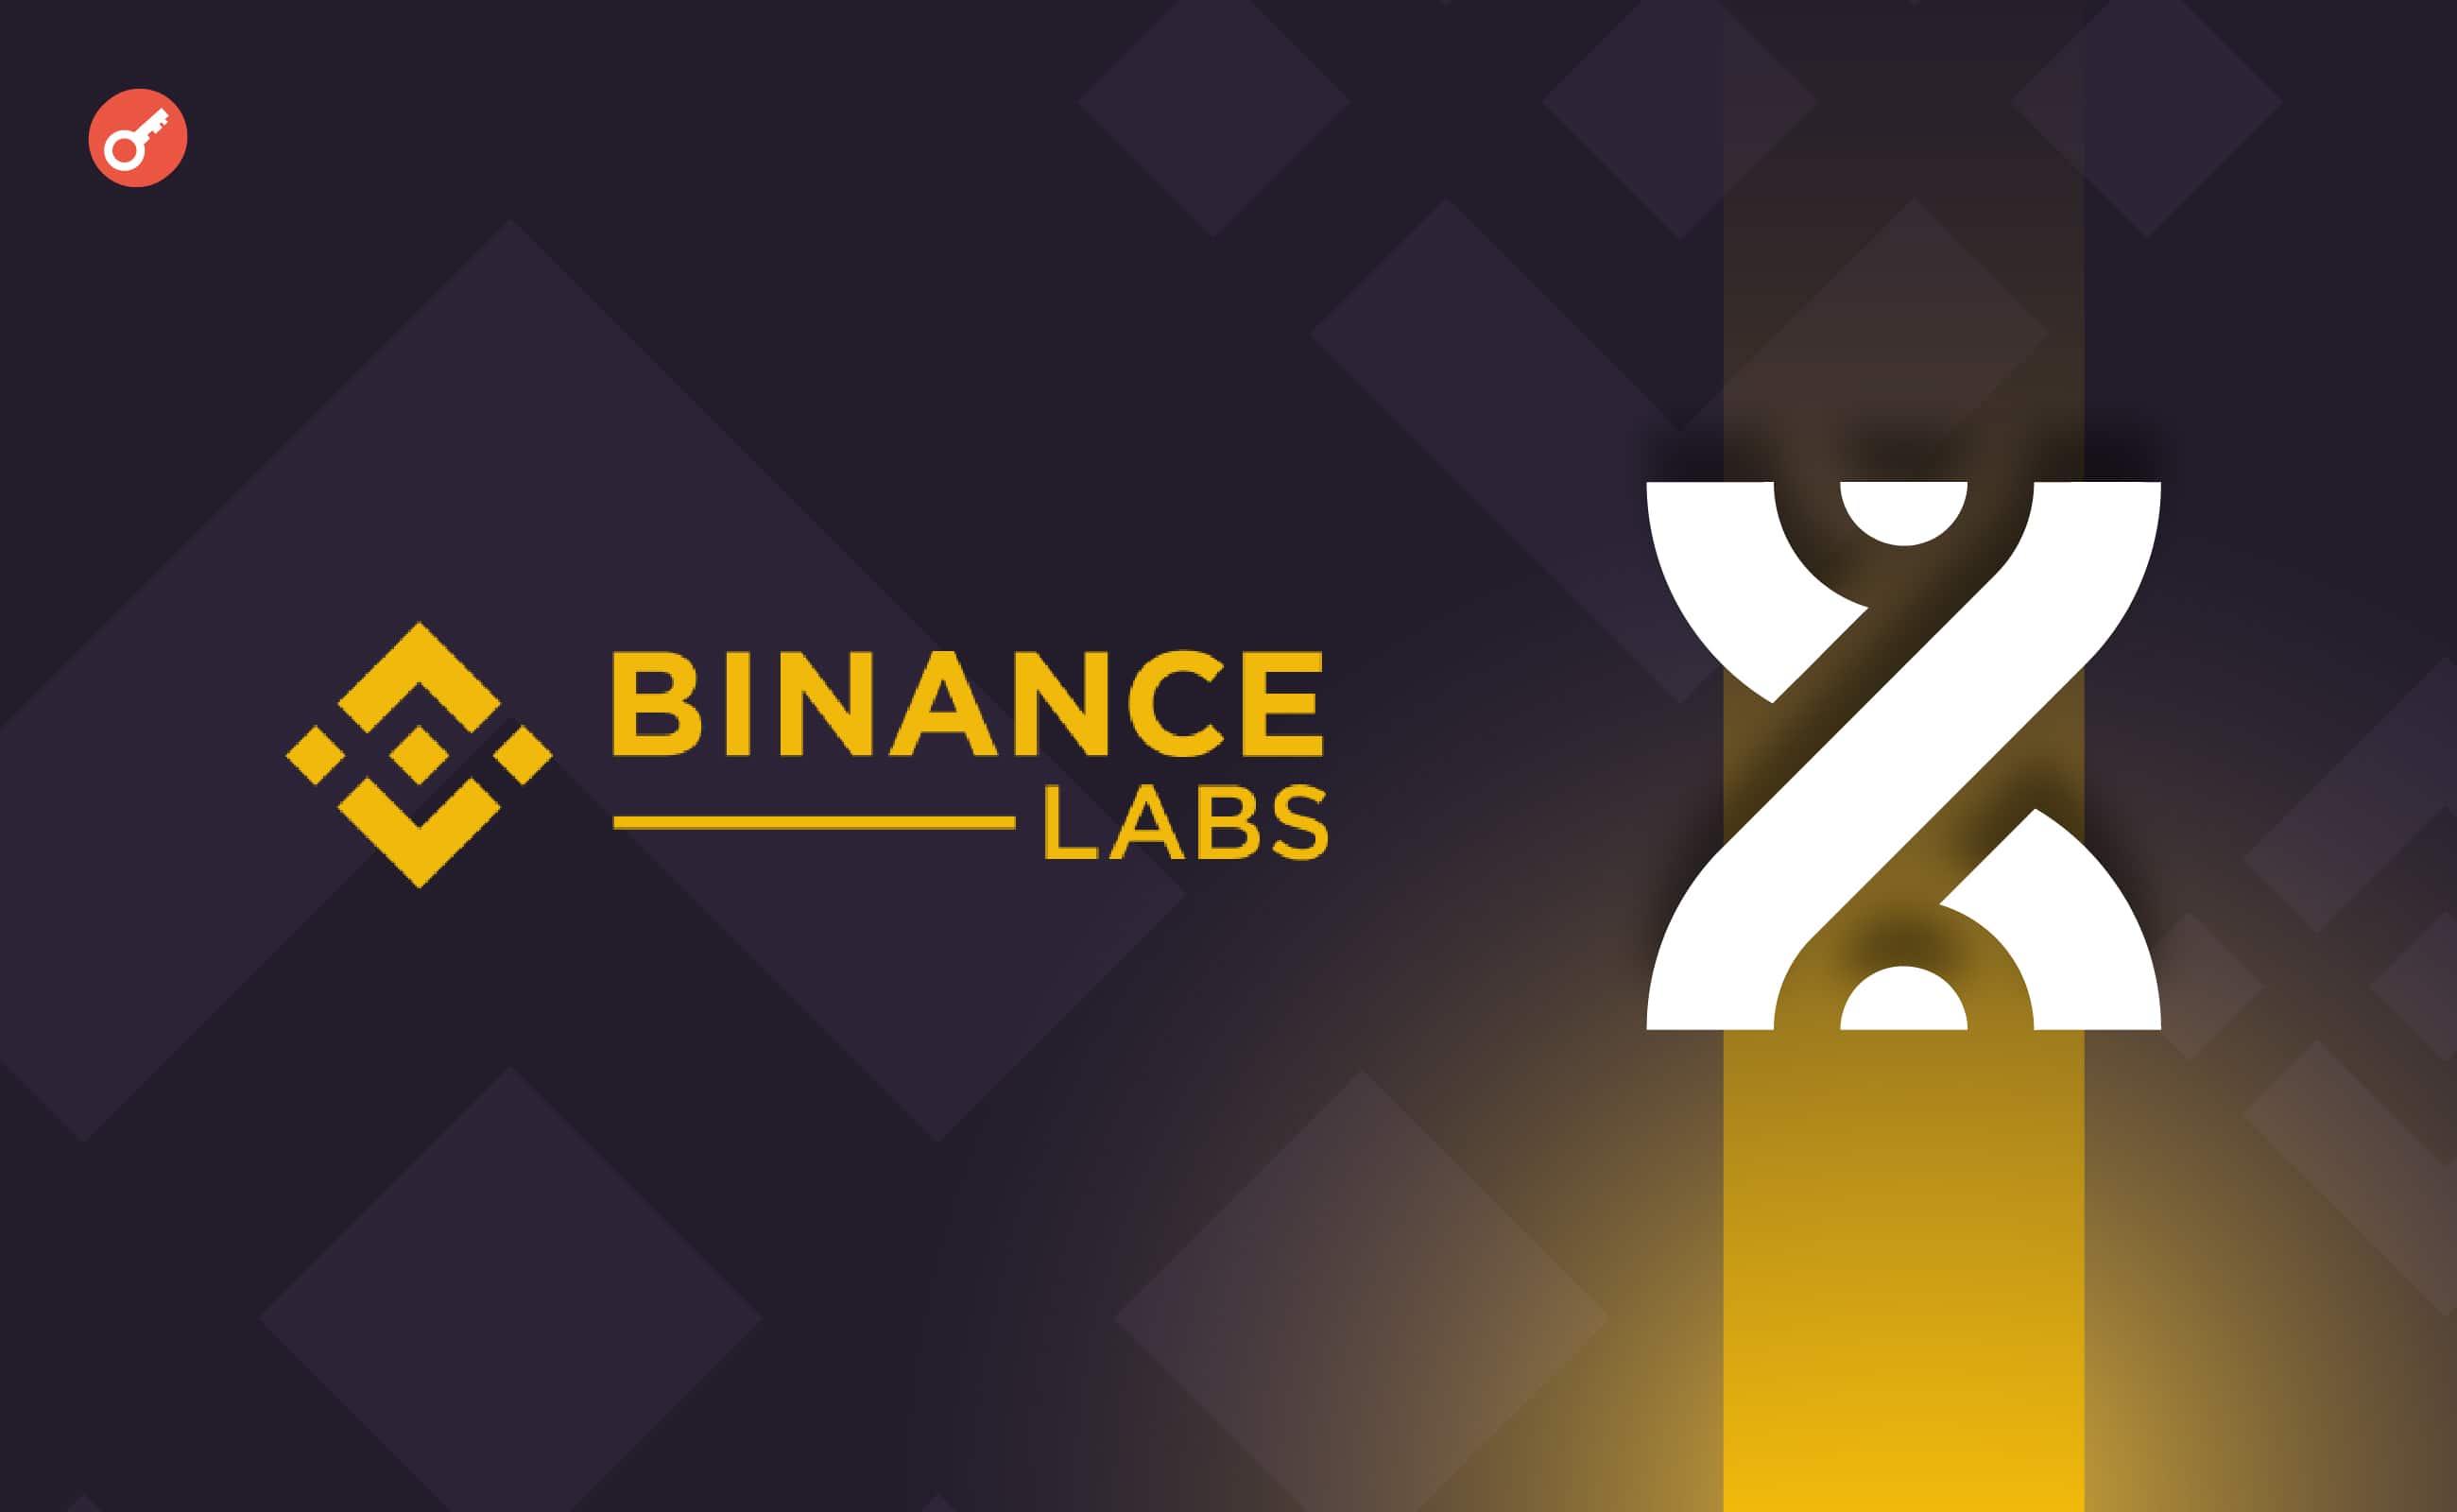 Binance Labs інвестувала в протокол рестейкінгу біткоїна BounceBit. Головний колаж новини.